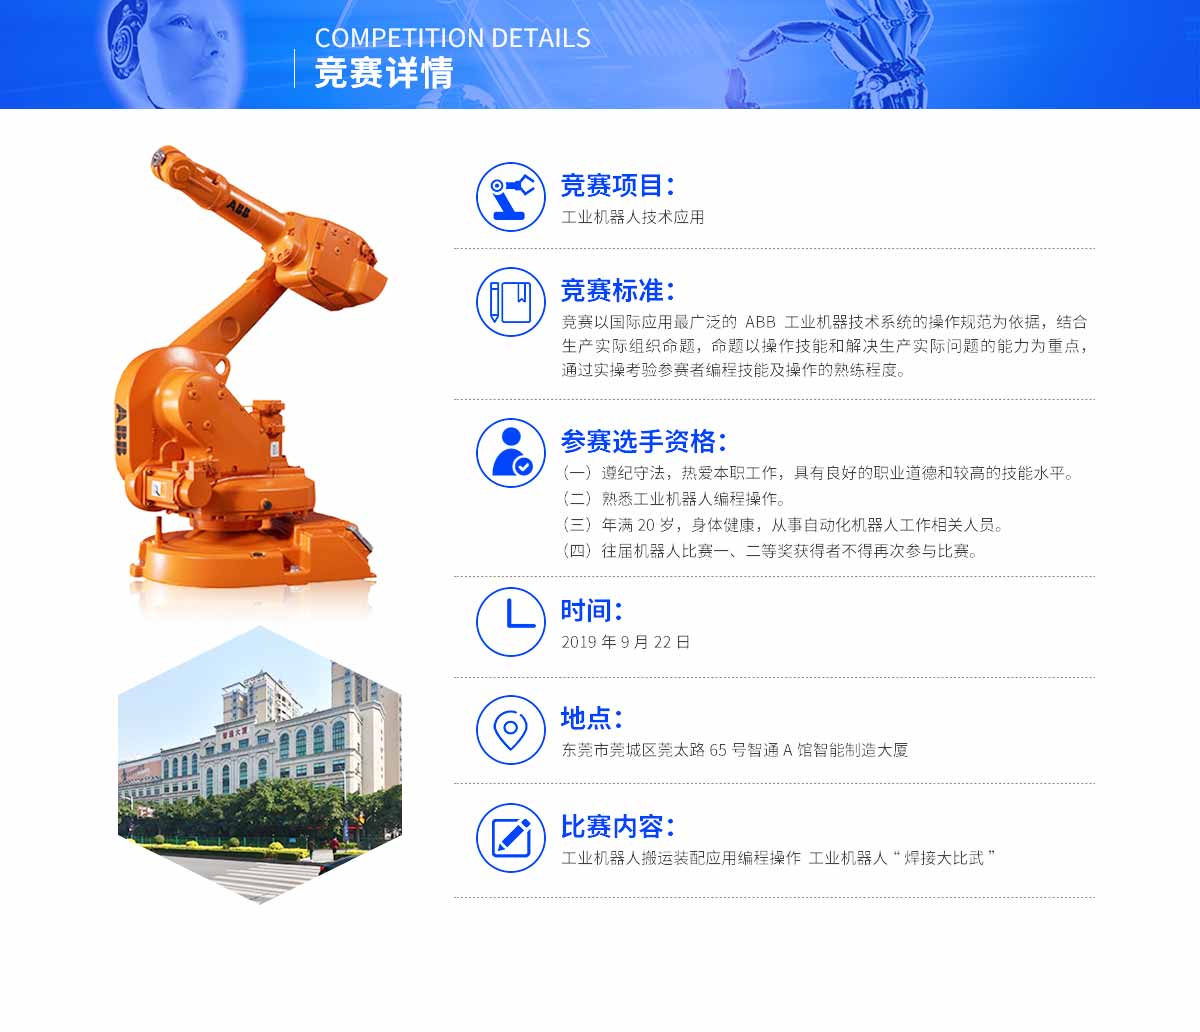 2019年9月22日東莞市第四屆工業機器人大賽簡介04